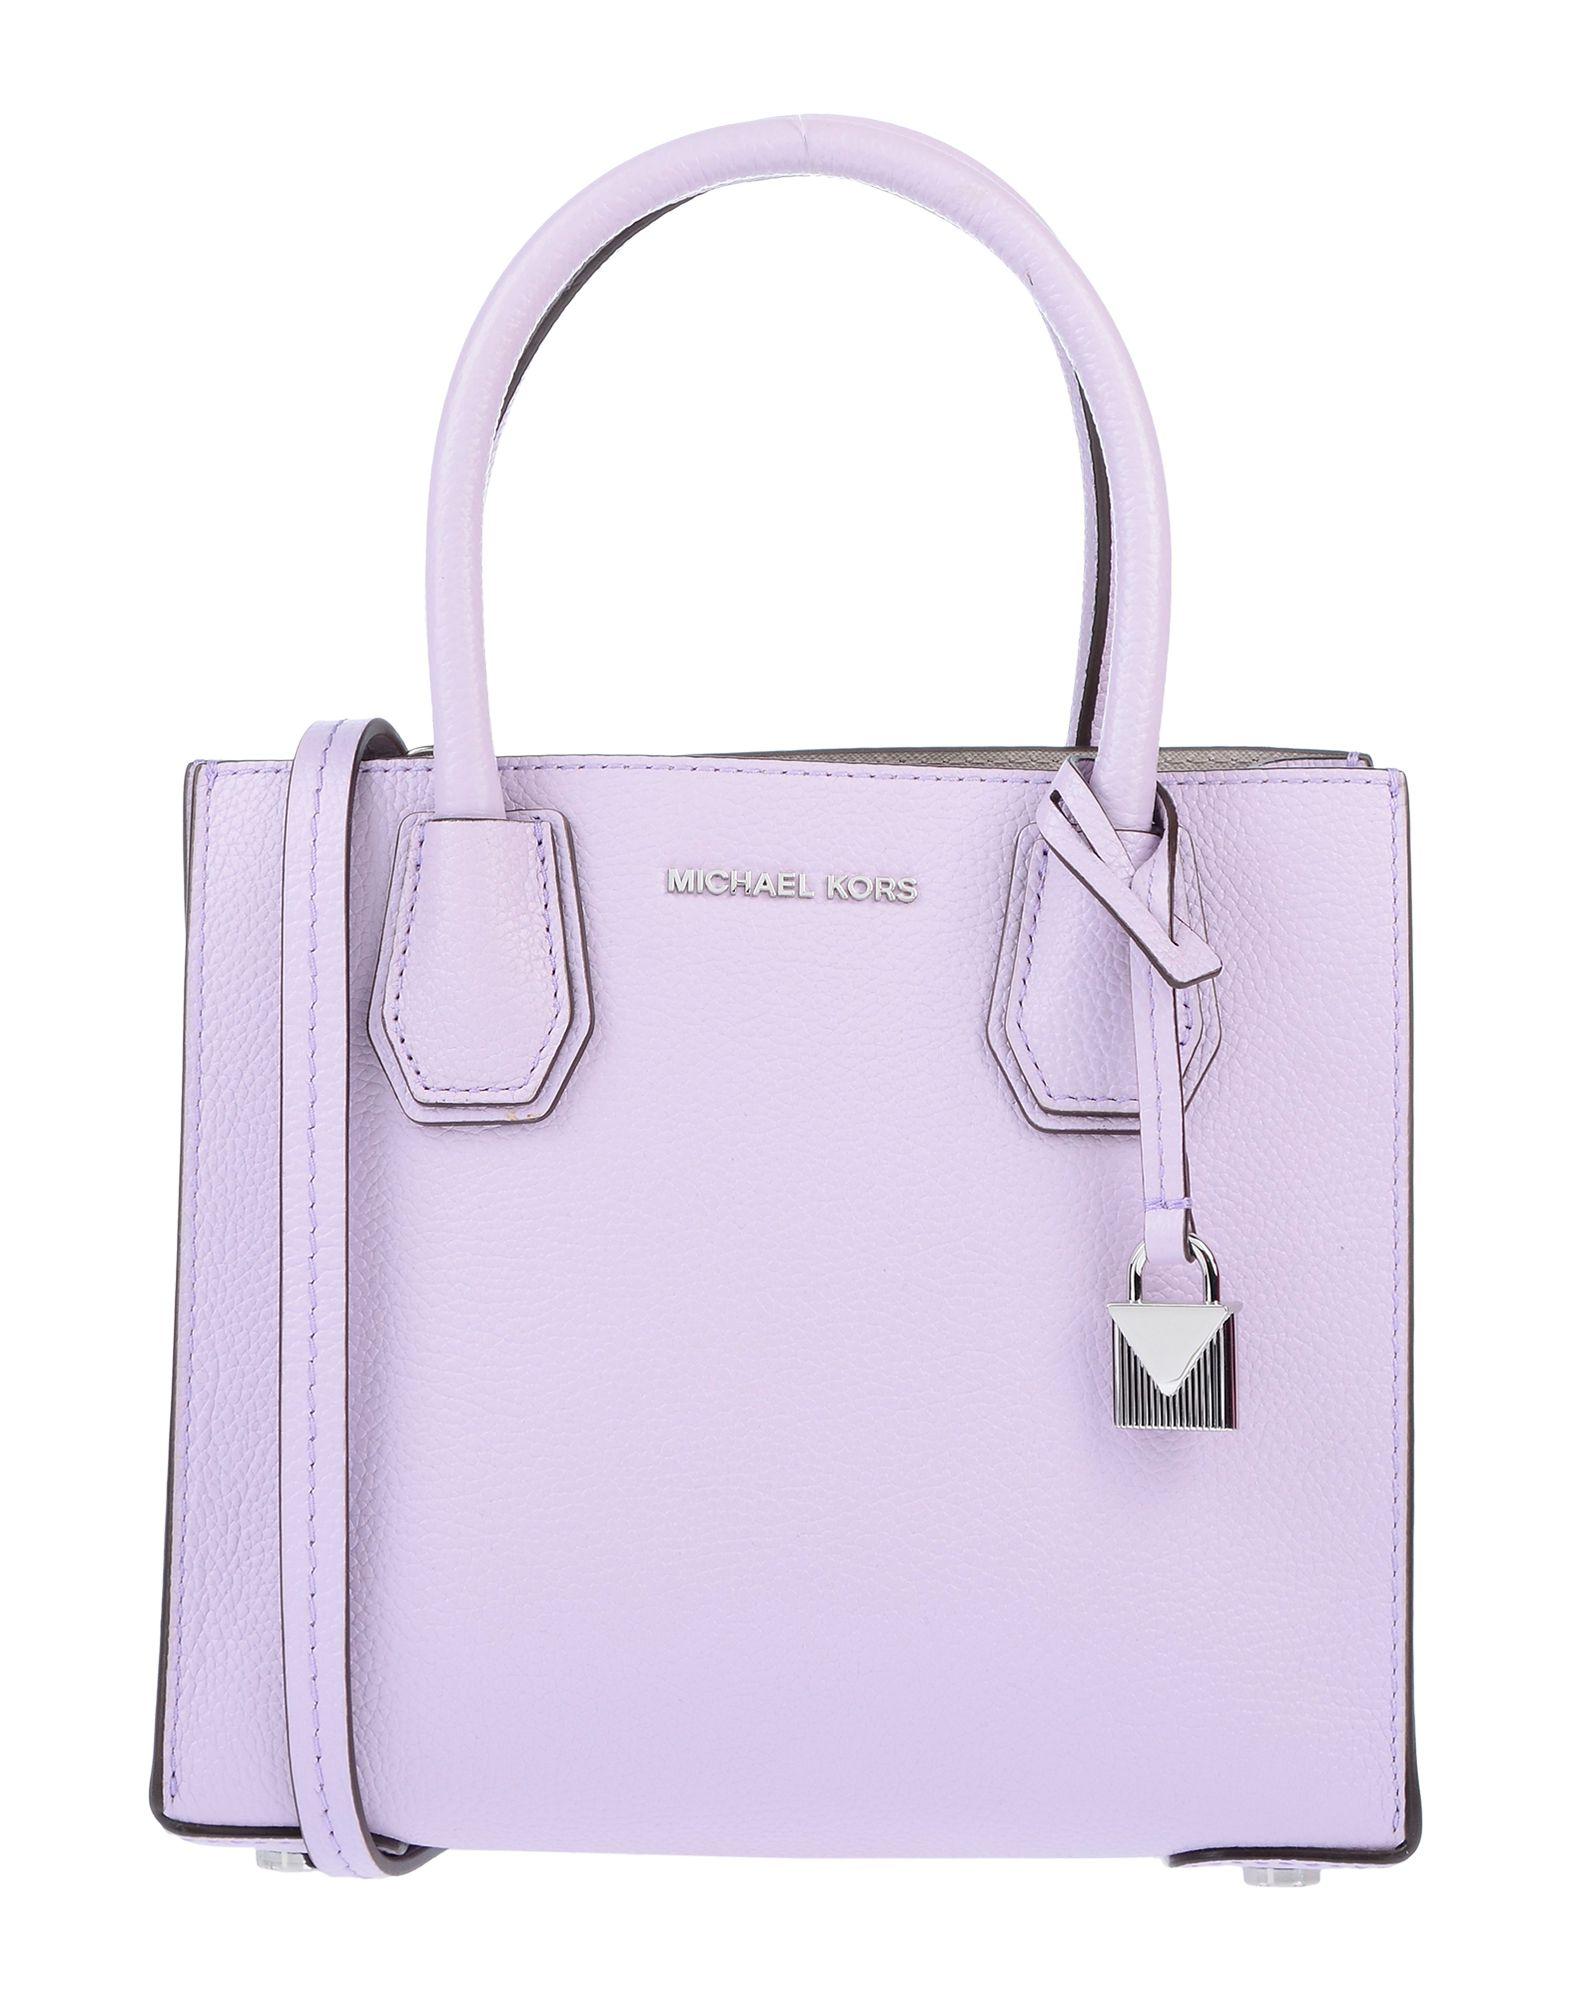 MK purple handbag